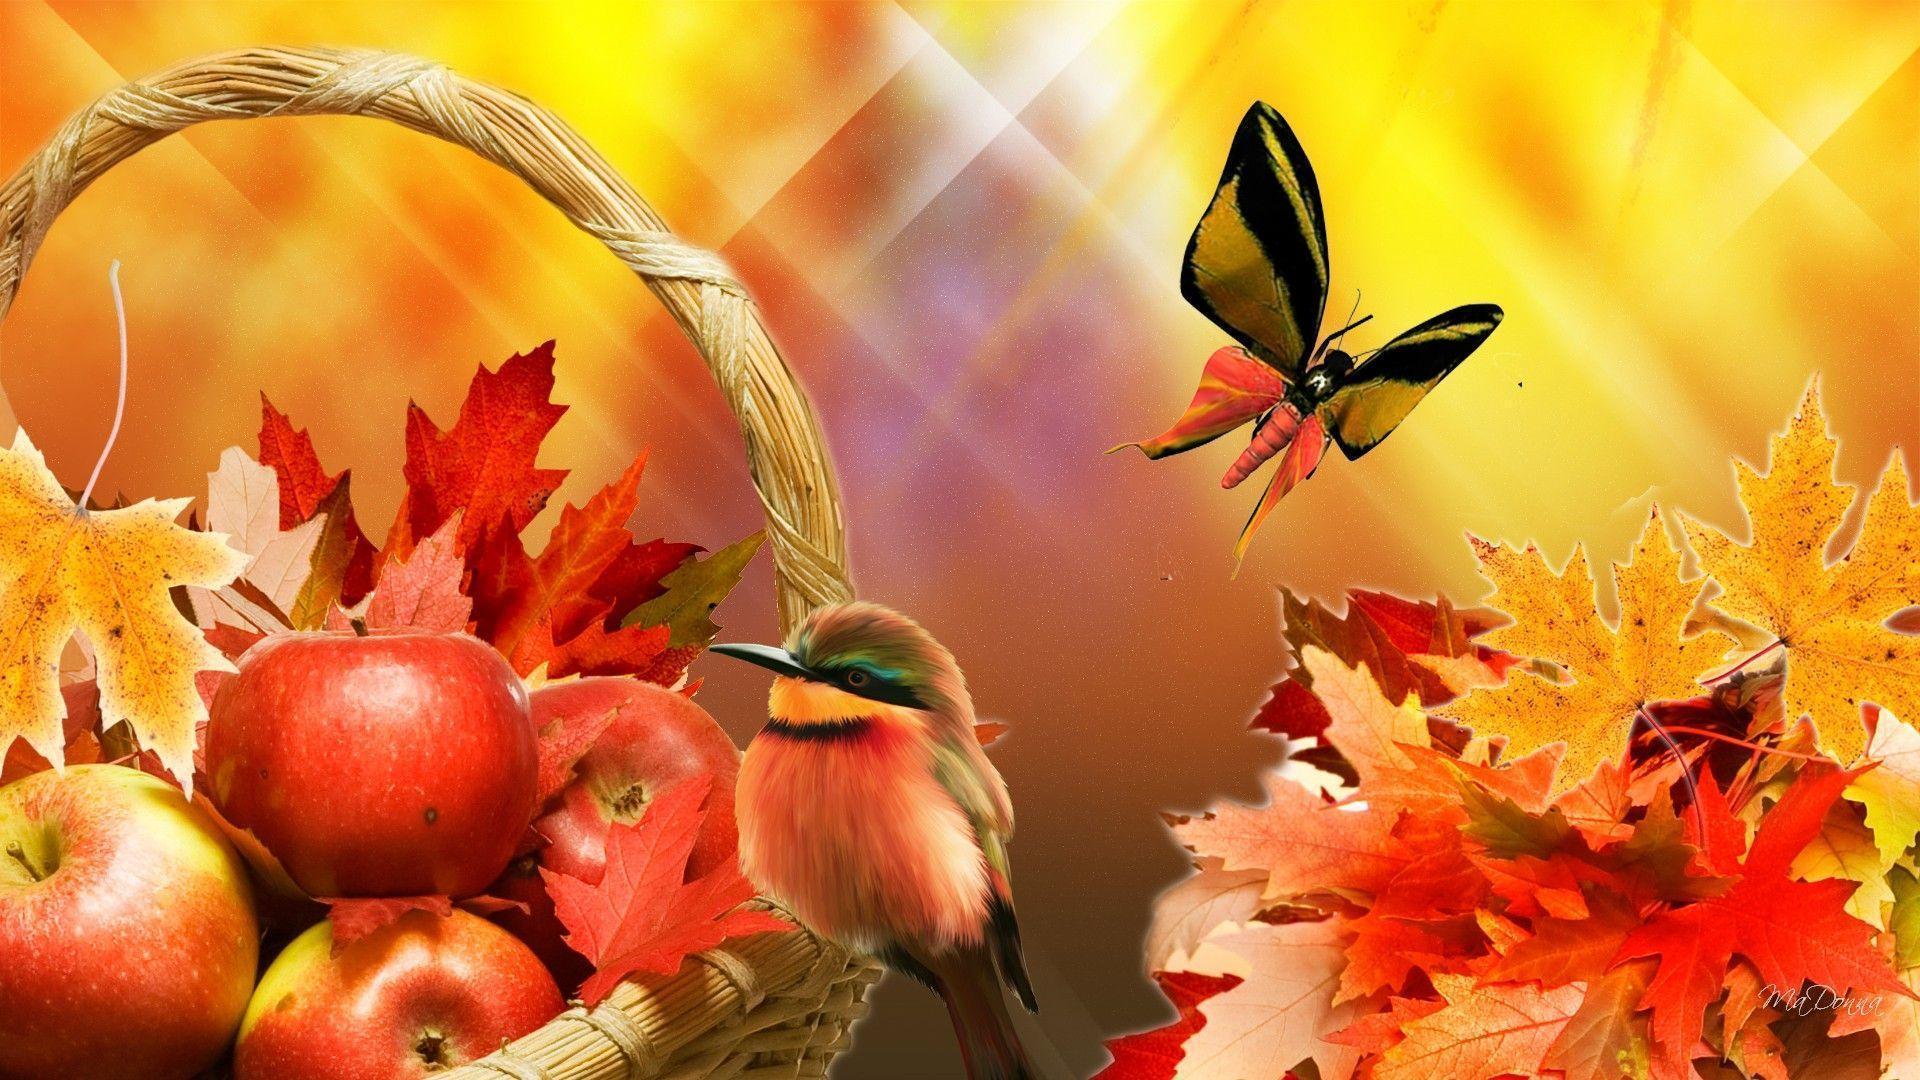 image For > Apple Harvest Wallpaper